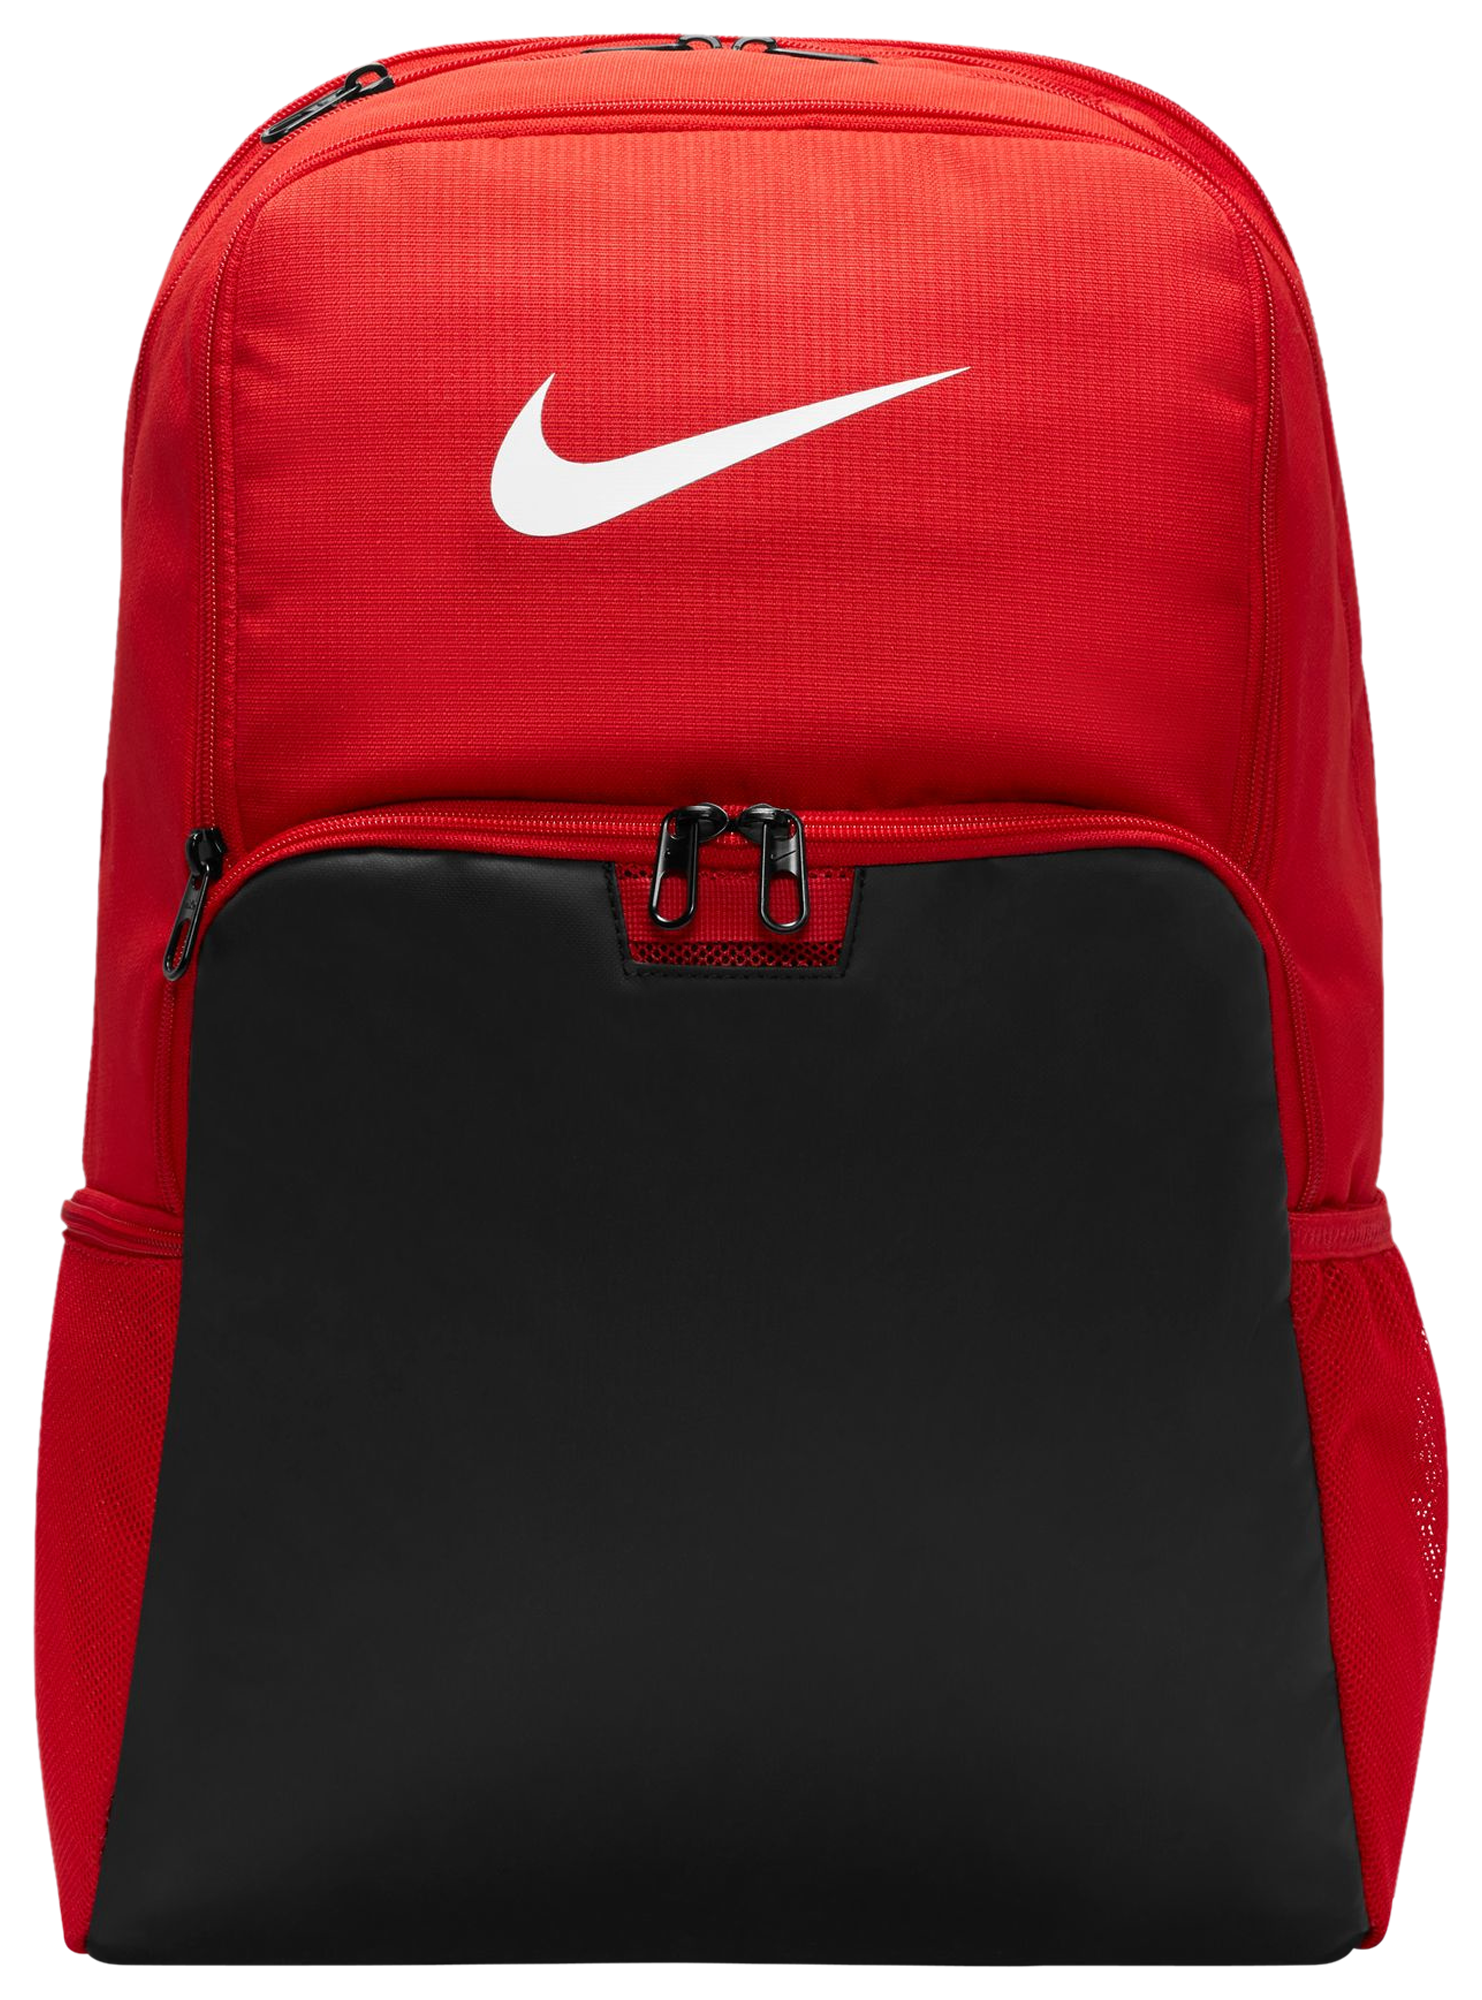 Nike / Clear Brasilia Backpack